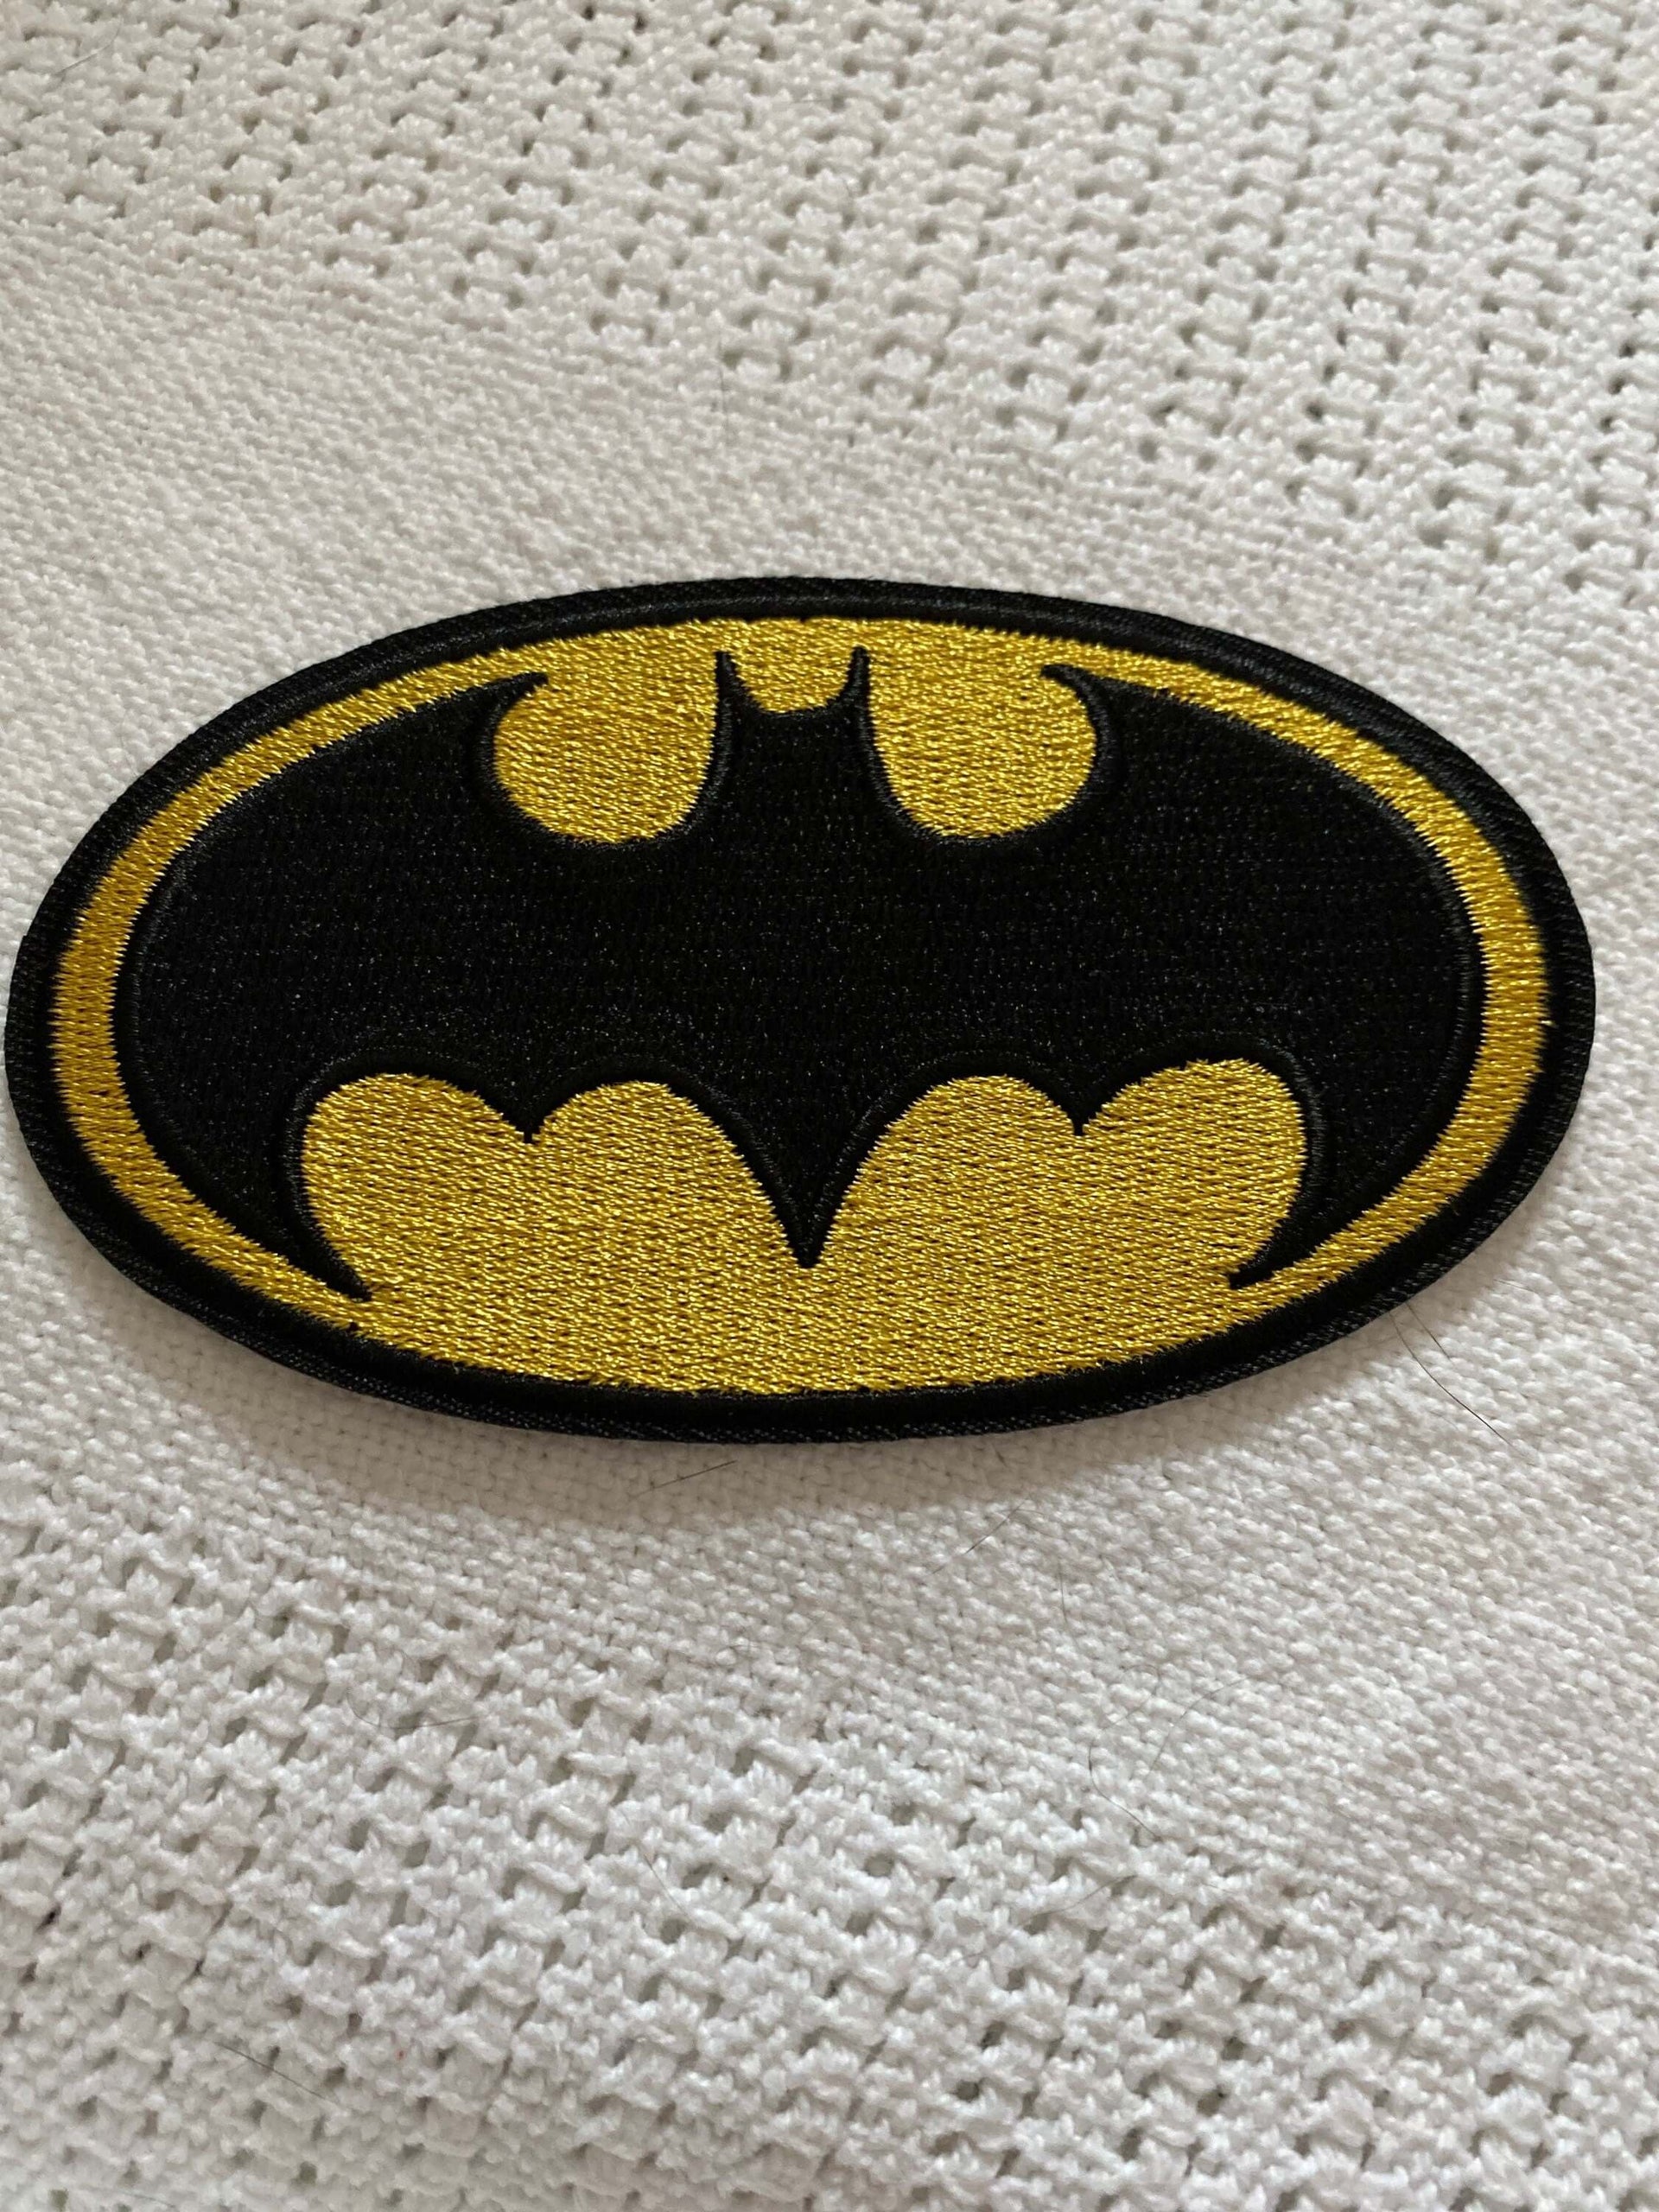 Patch logo Batman